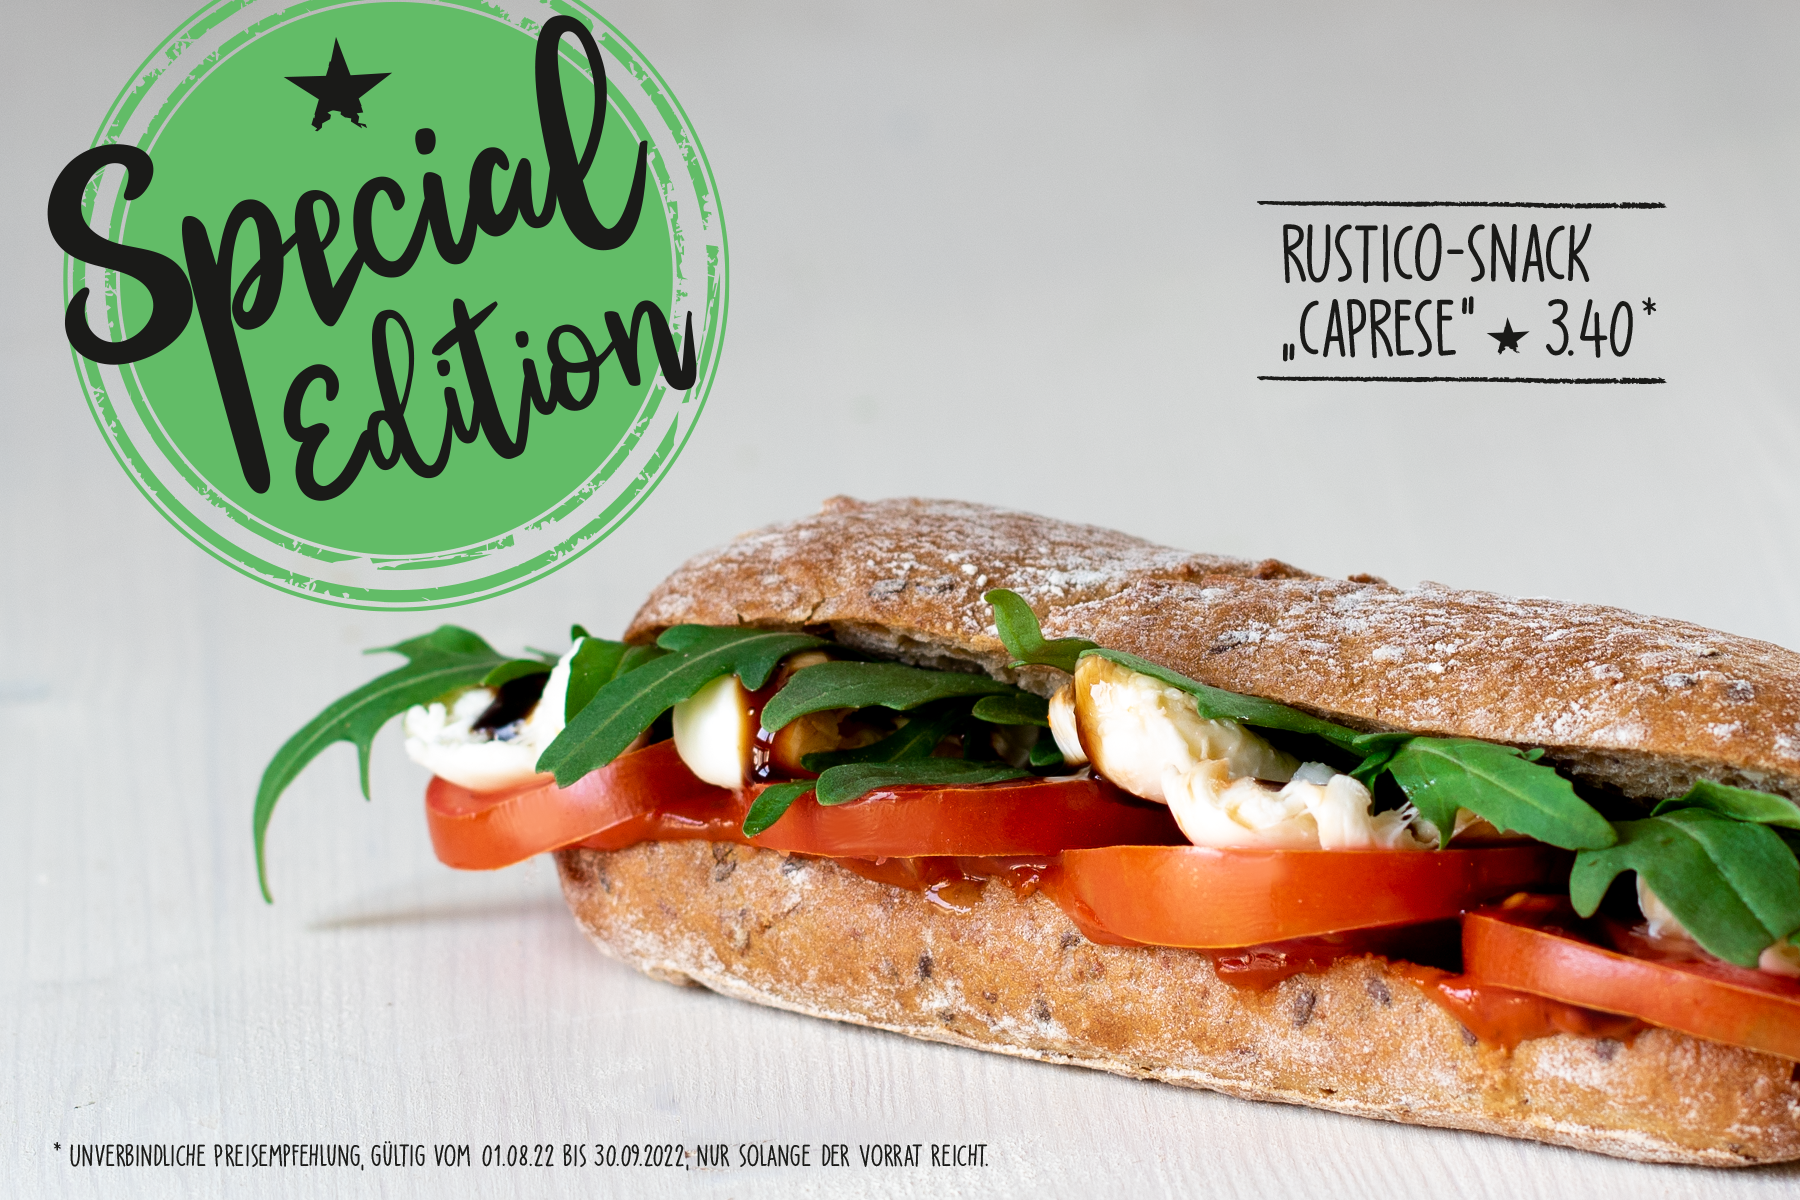 Special Edition: Rustico-Snack 